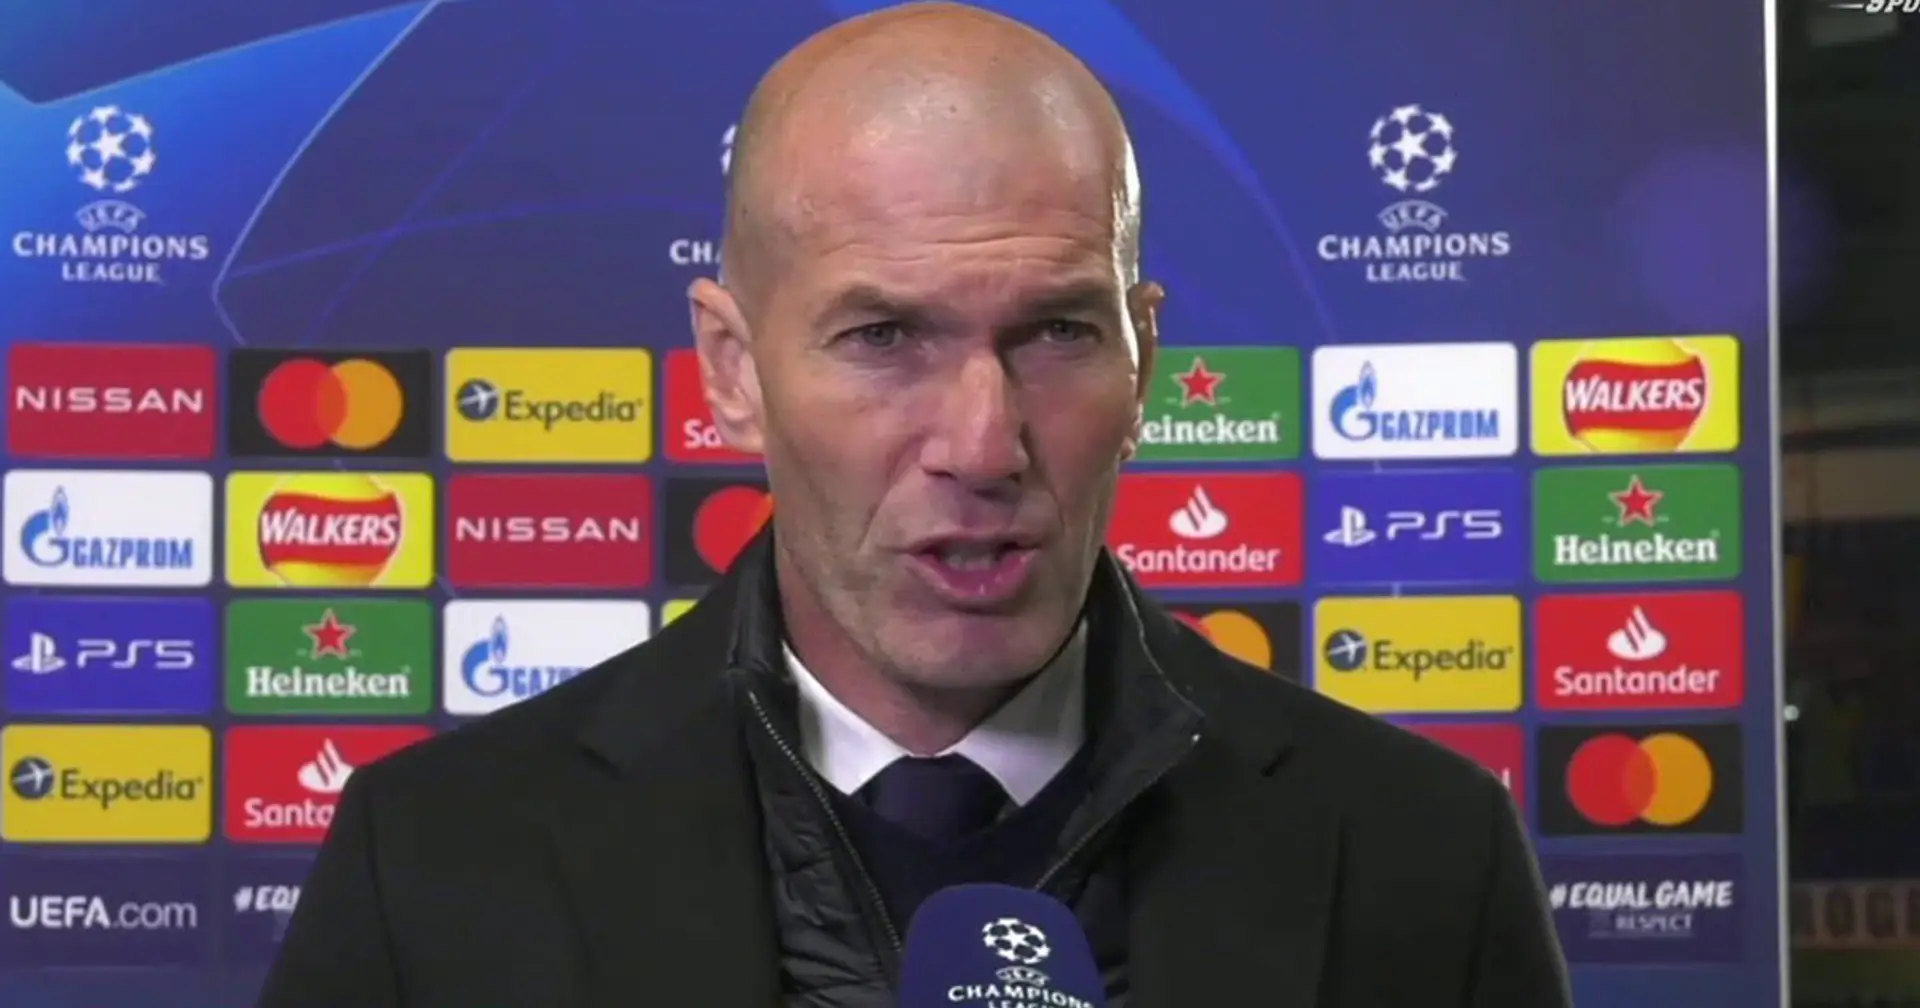 Zidane nennt einen Spieler von Real Madrid, der alle Erwartungen übertroffen hat